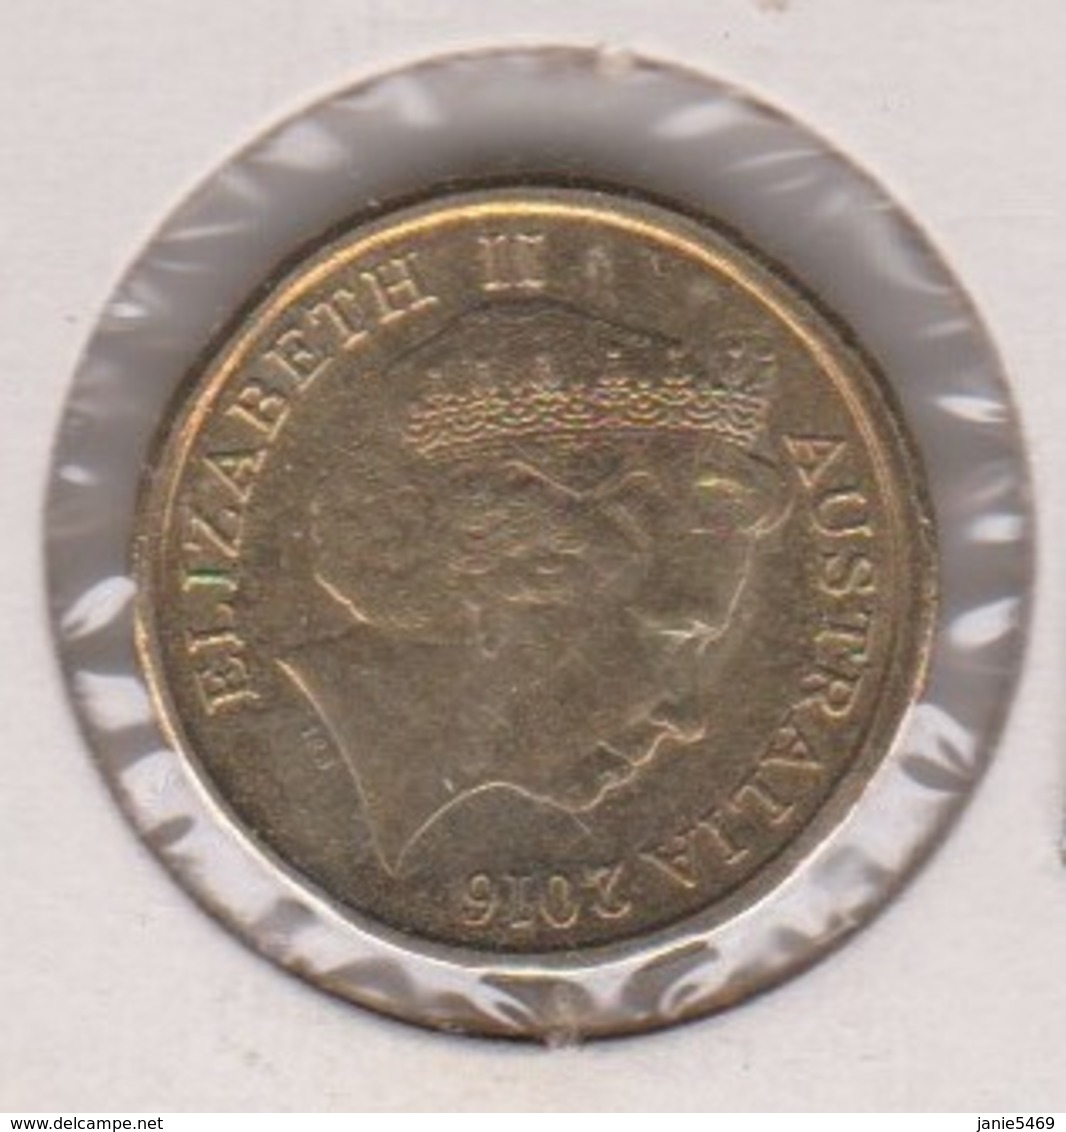 Australia 2016 Queen Elizabeth II $ 2.00 Coin - 2 Dollars